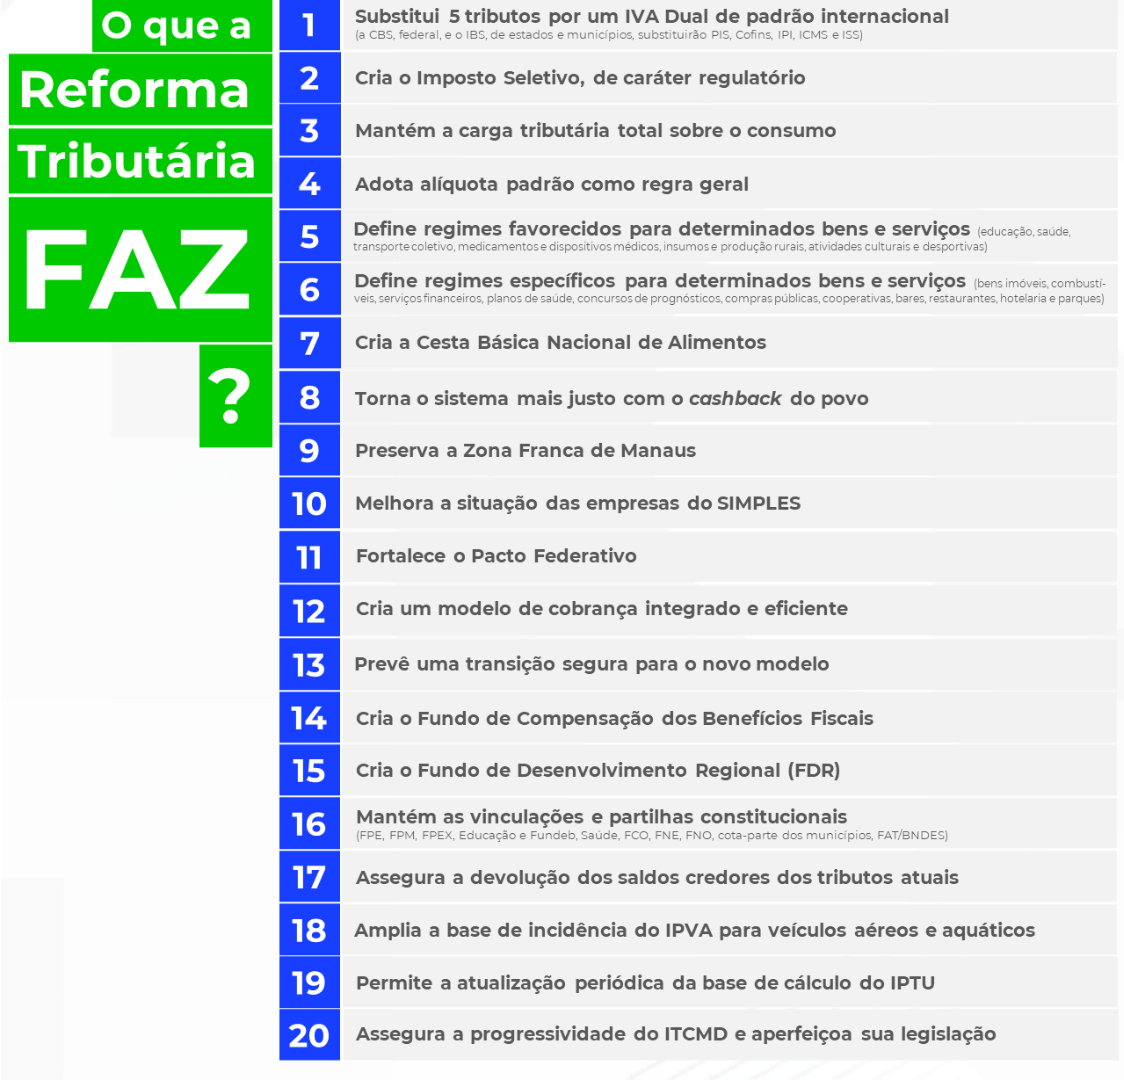 Imagem O que a Reforma faz.png